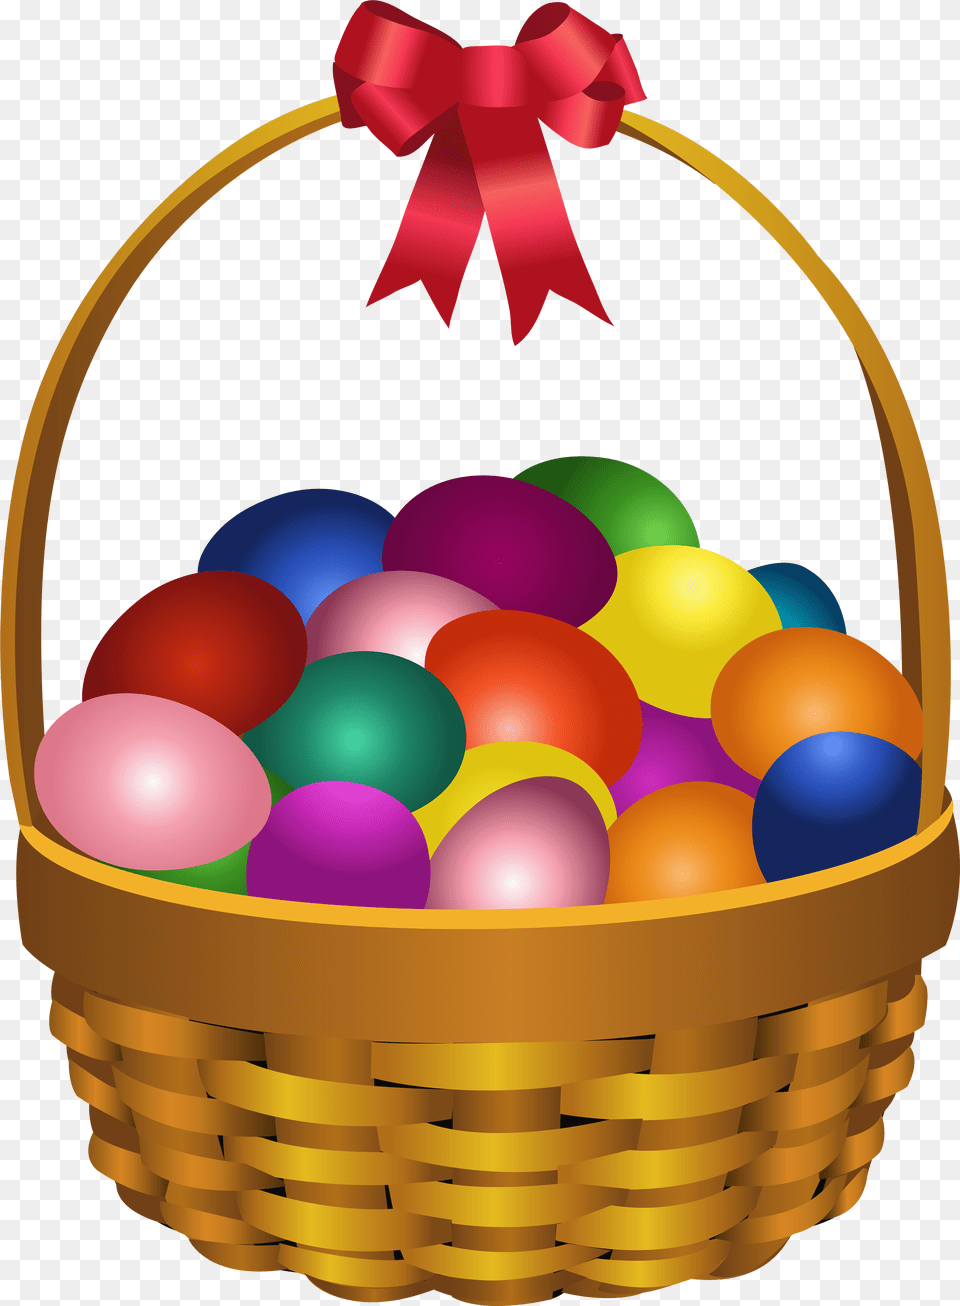 Easter Bunny Red Easter Egg Basket Clip Art Fruit Basket Clip Art, Food, Balloon Png